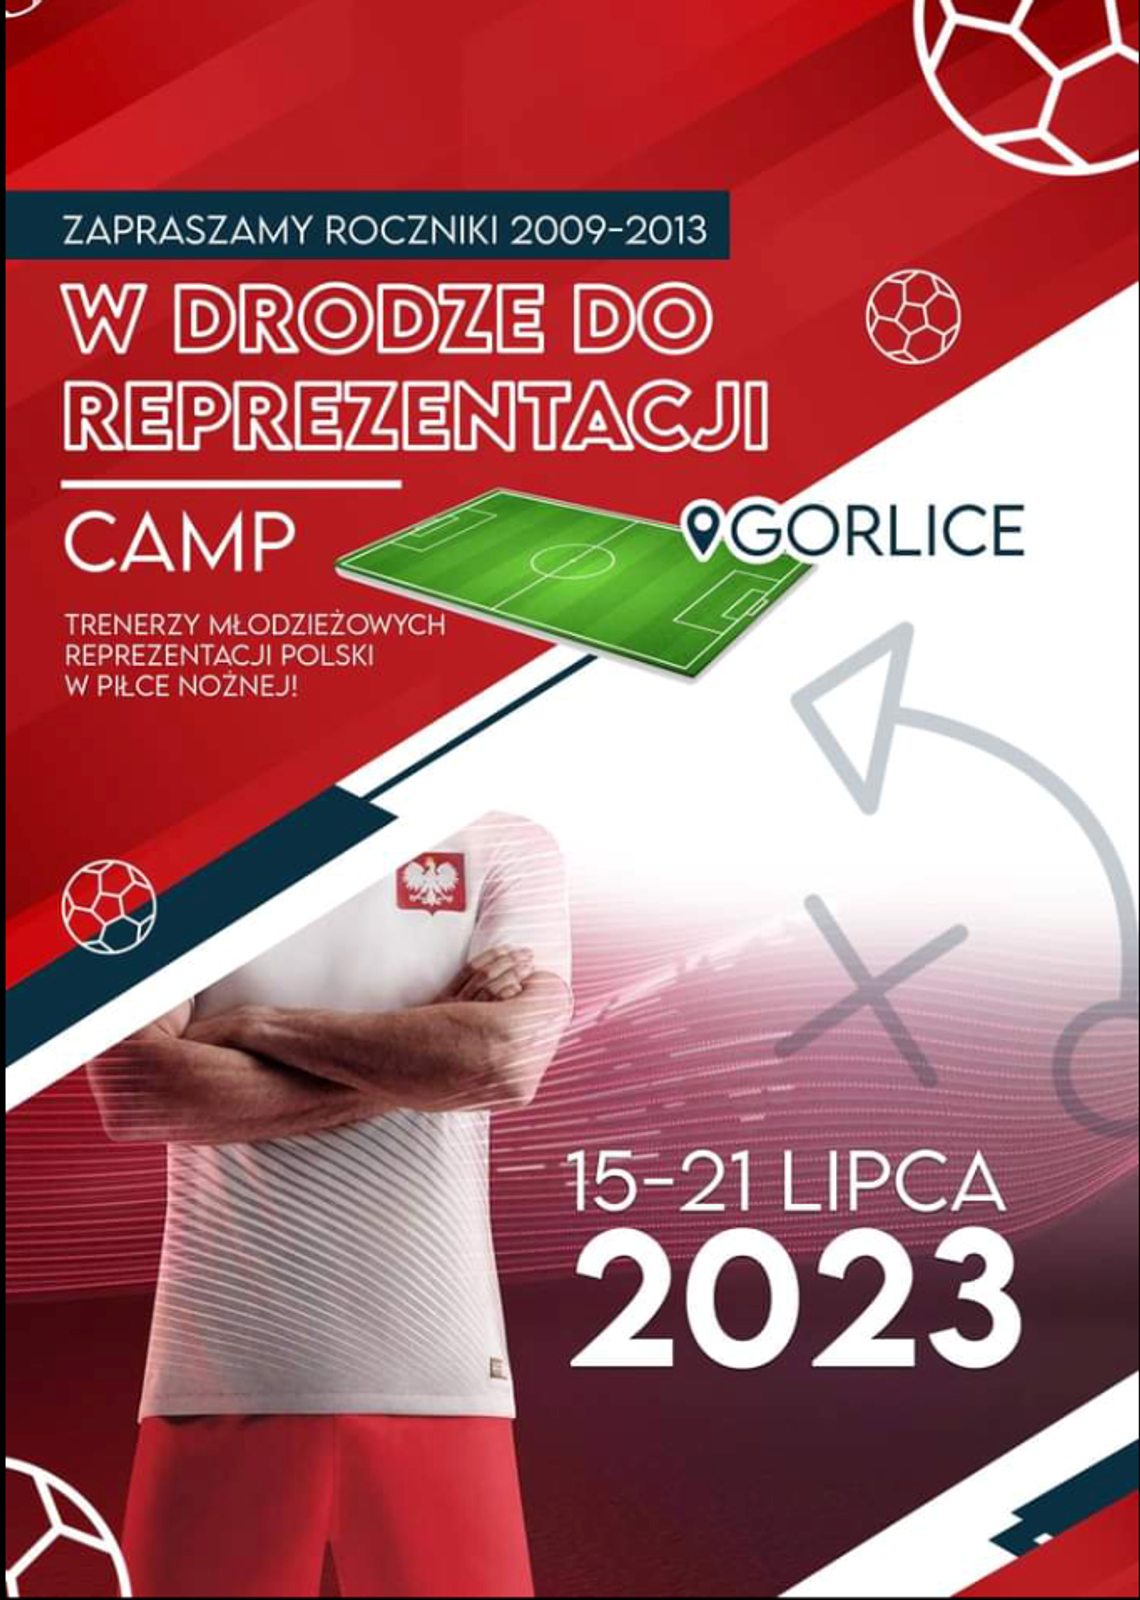 W drodze do reprezentacji – CAMP Gorlice 2023 | halogorlice.info